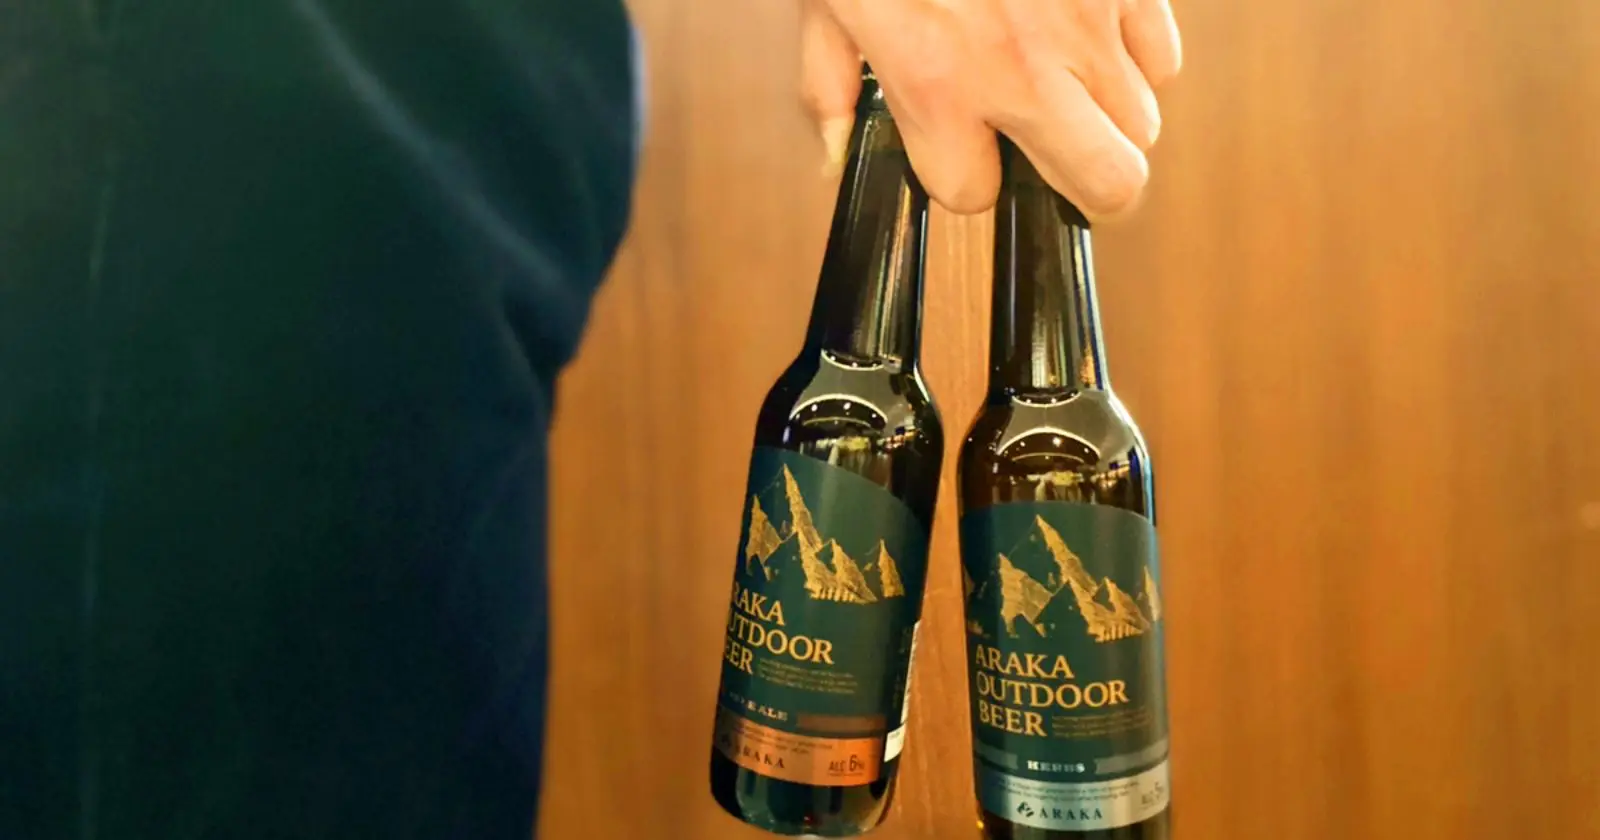 世界一自由なアウトドアブランドの第2弾プロダクト 大自然専用クラフトビール Araka Outdoor Beer Takibi タキビ キャンプ アウトドアの総合情報サイト